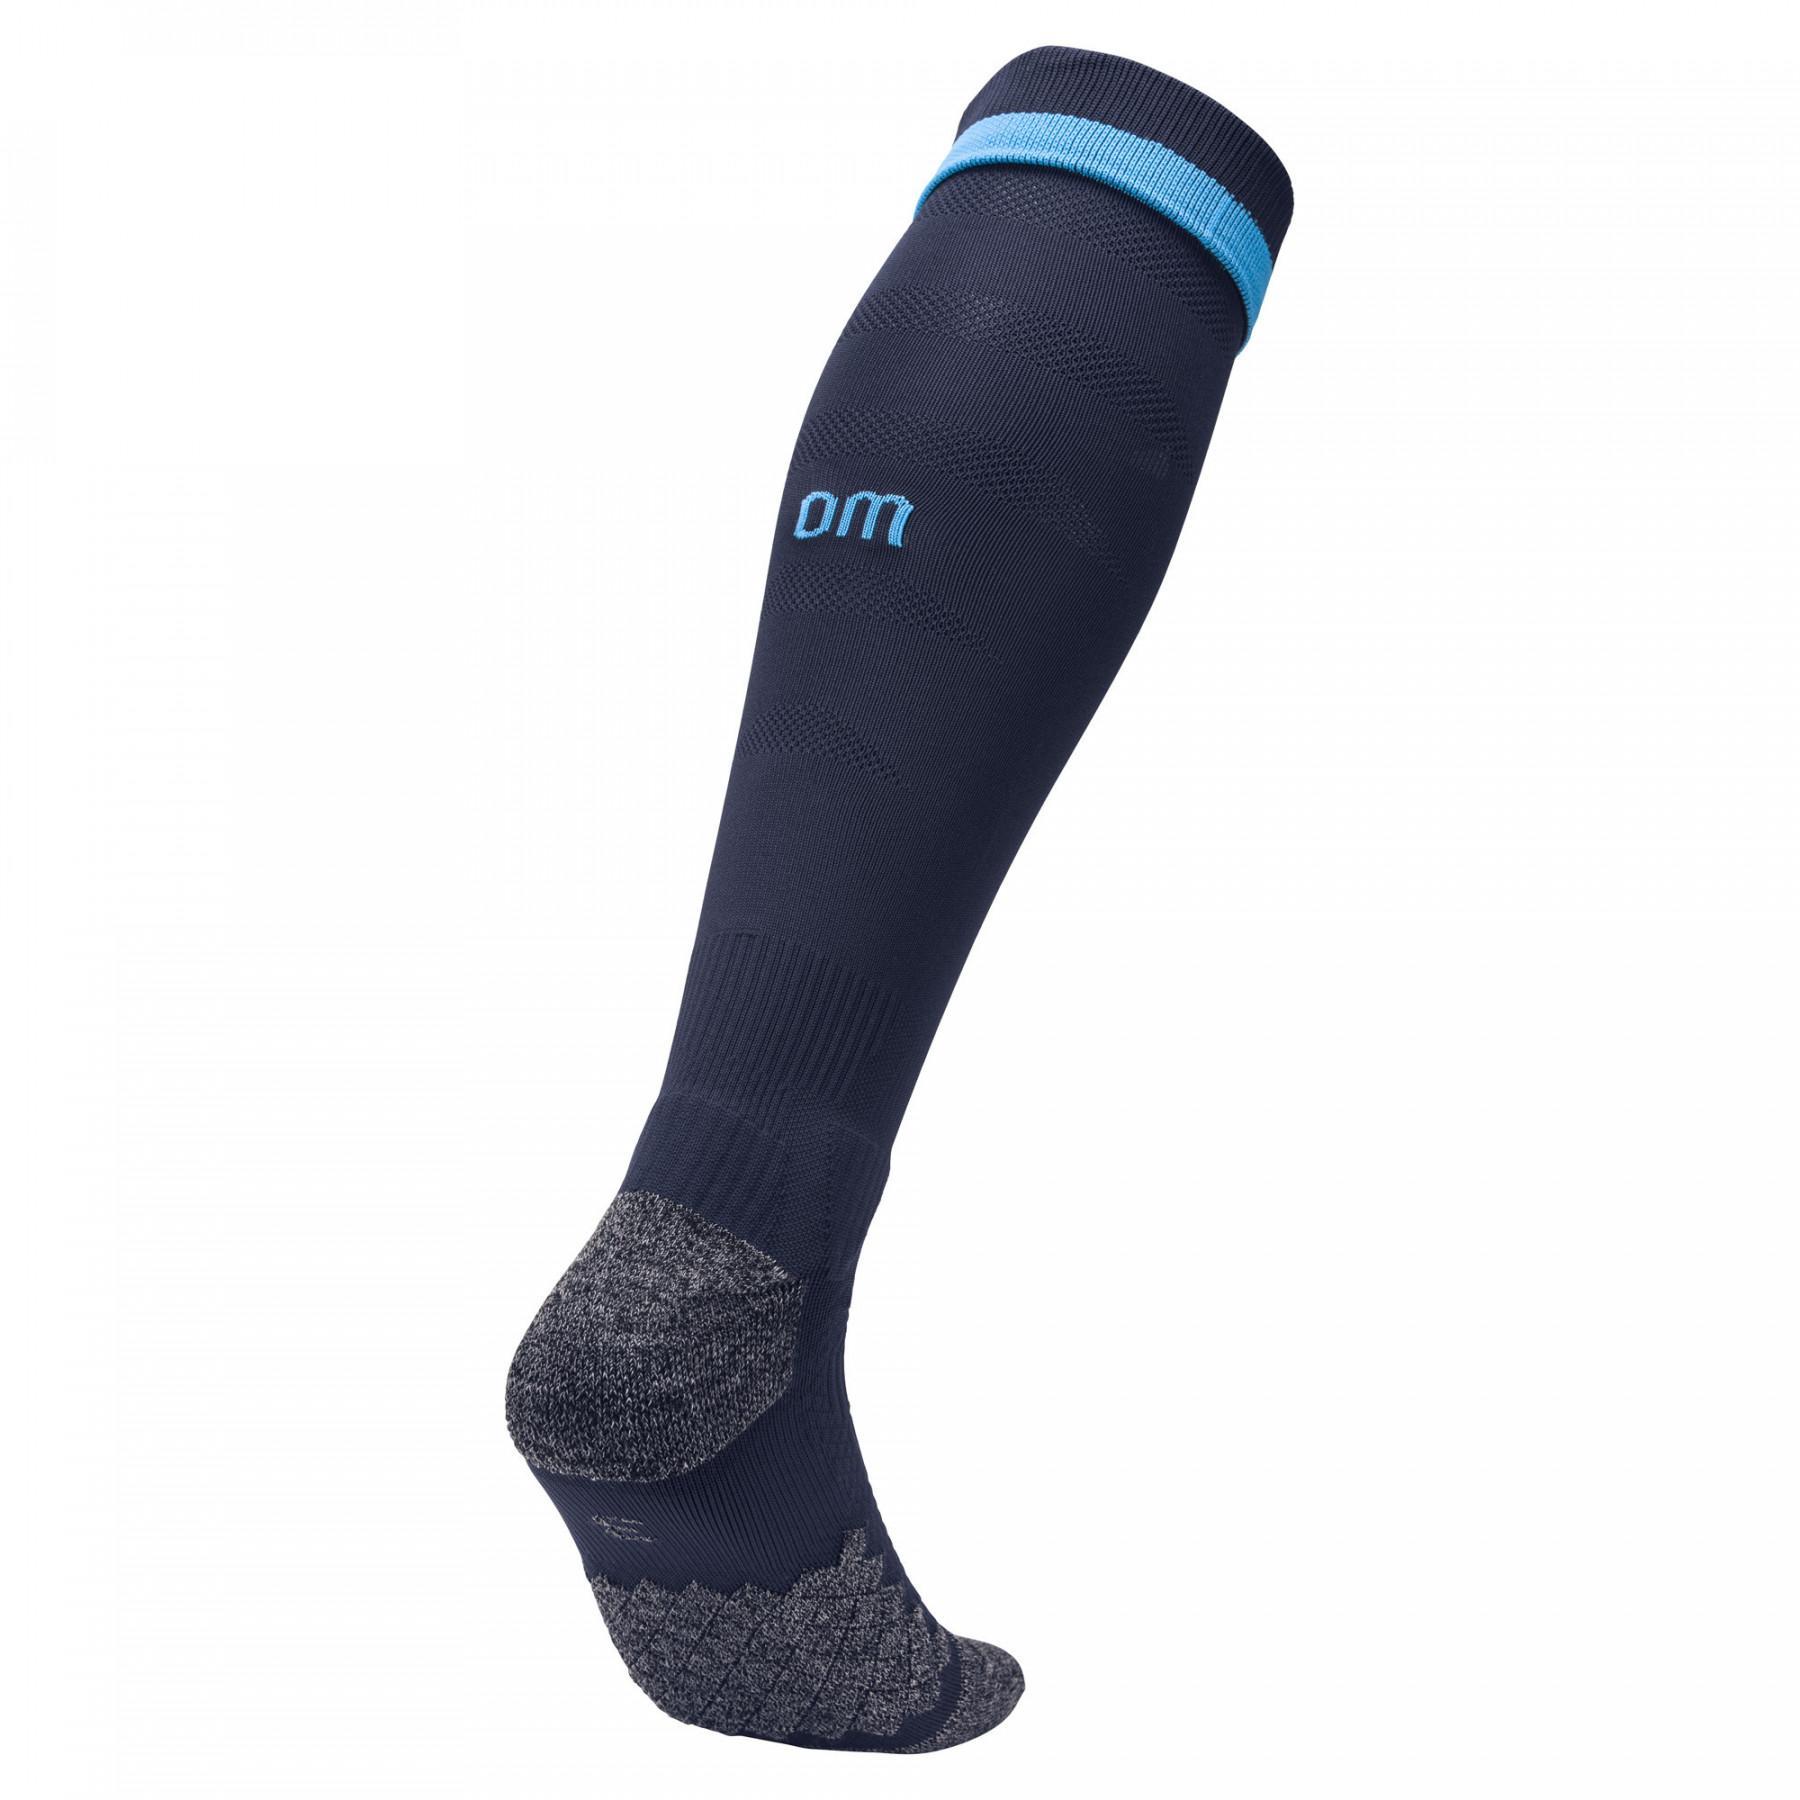 Third socks OM 2018/2019